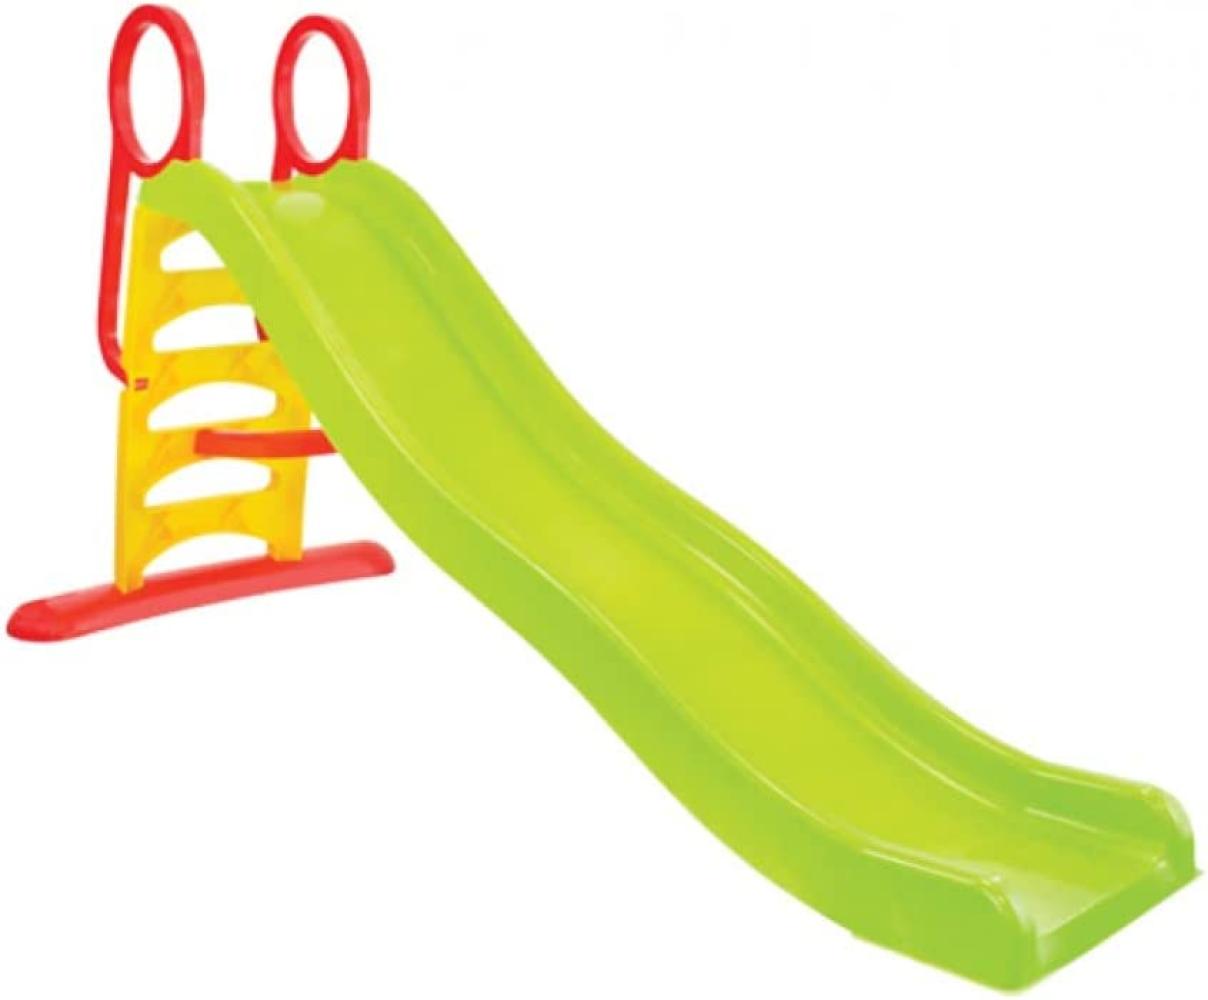 Mochtoys 11557 'Large Slide', 205 x 110 x 84 cm (LxHxB), ab 2 Jahren, 2in1 Kinder- und Wasserrutsche, bis 50 kg belastbar, rot-grün-gelb Bild 1